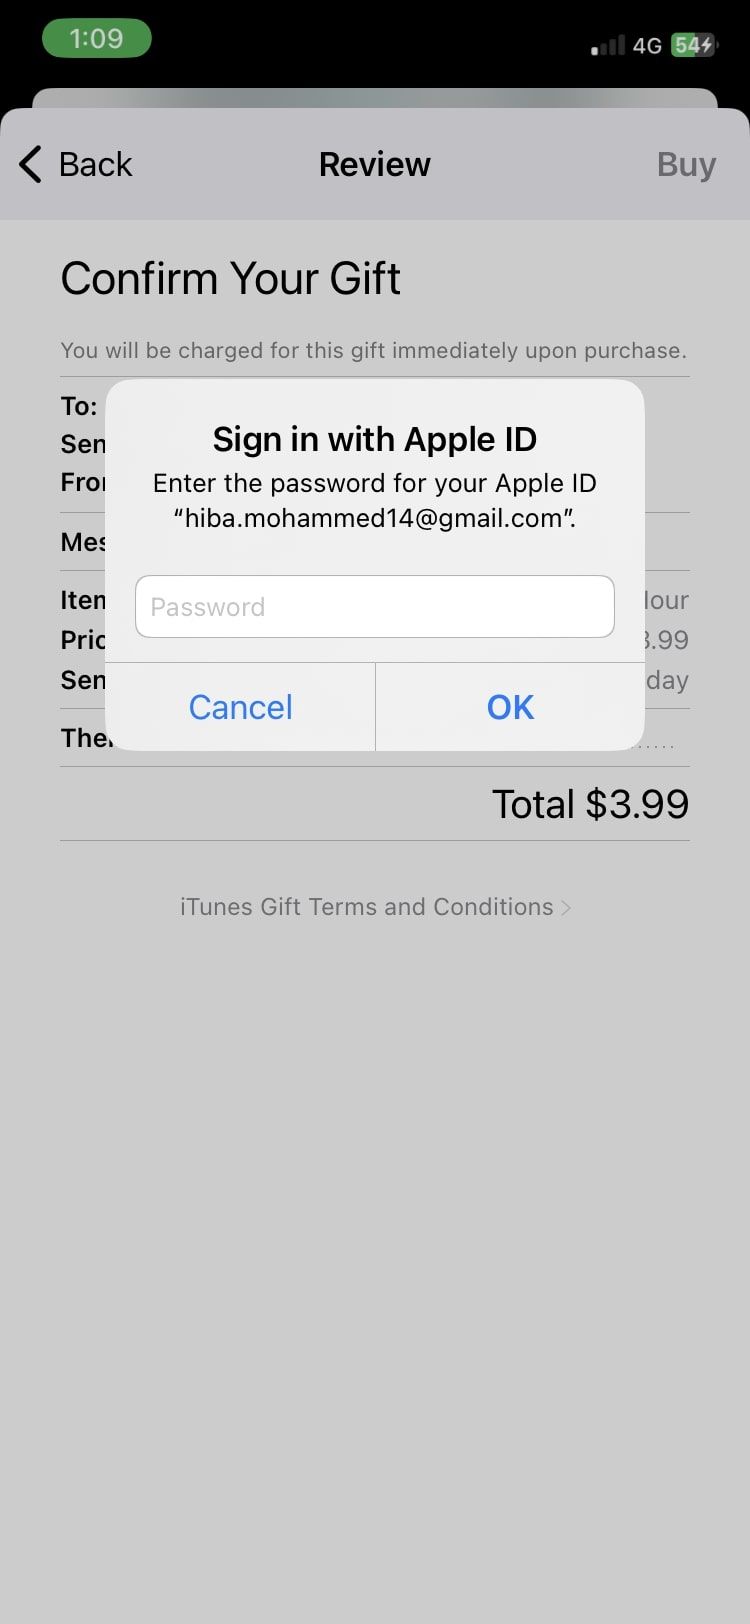 authorise transaction in Apple Books